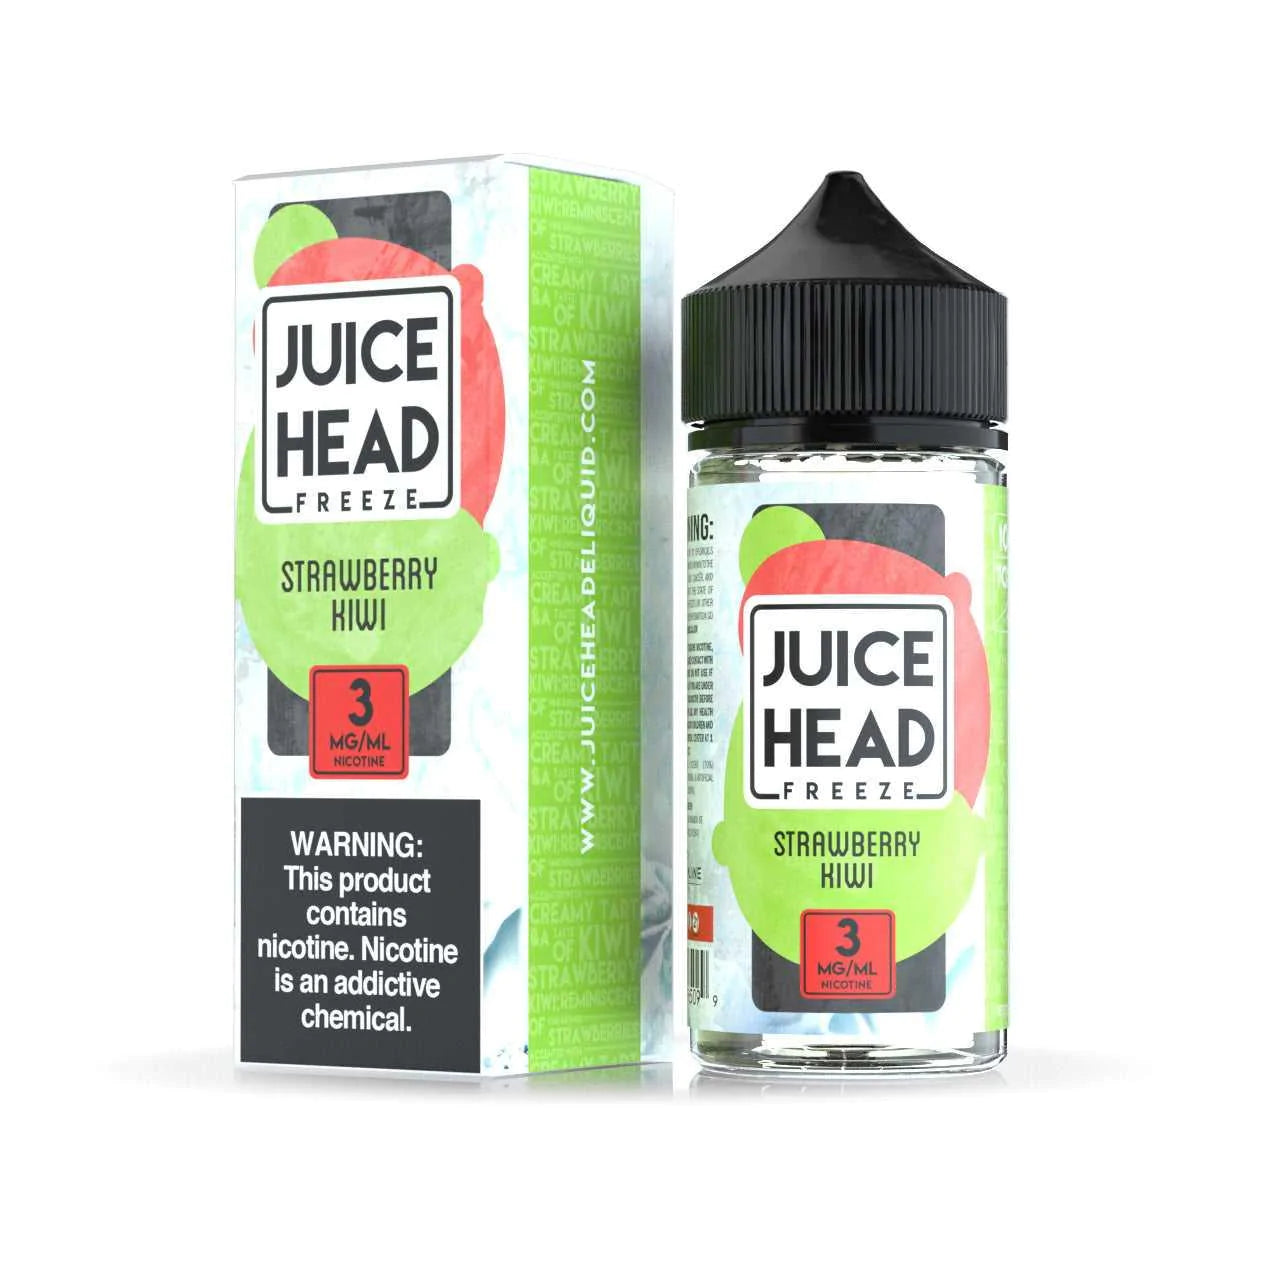 Juice Head Freeze: Strawberry Kiwi